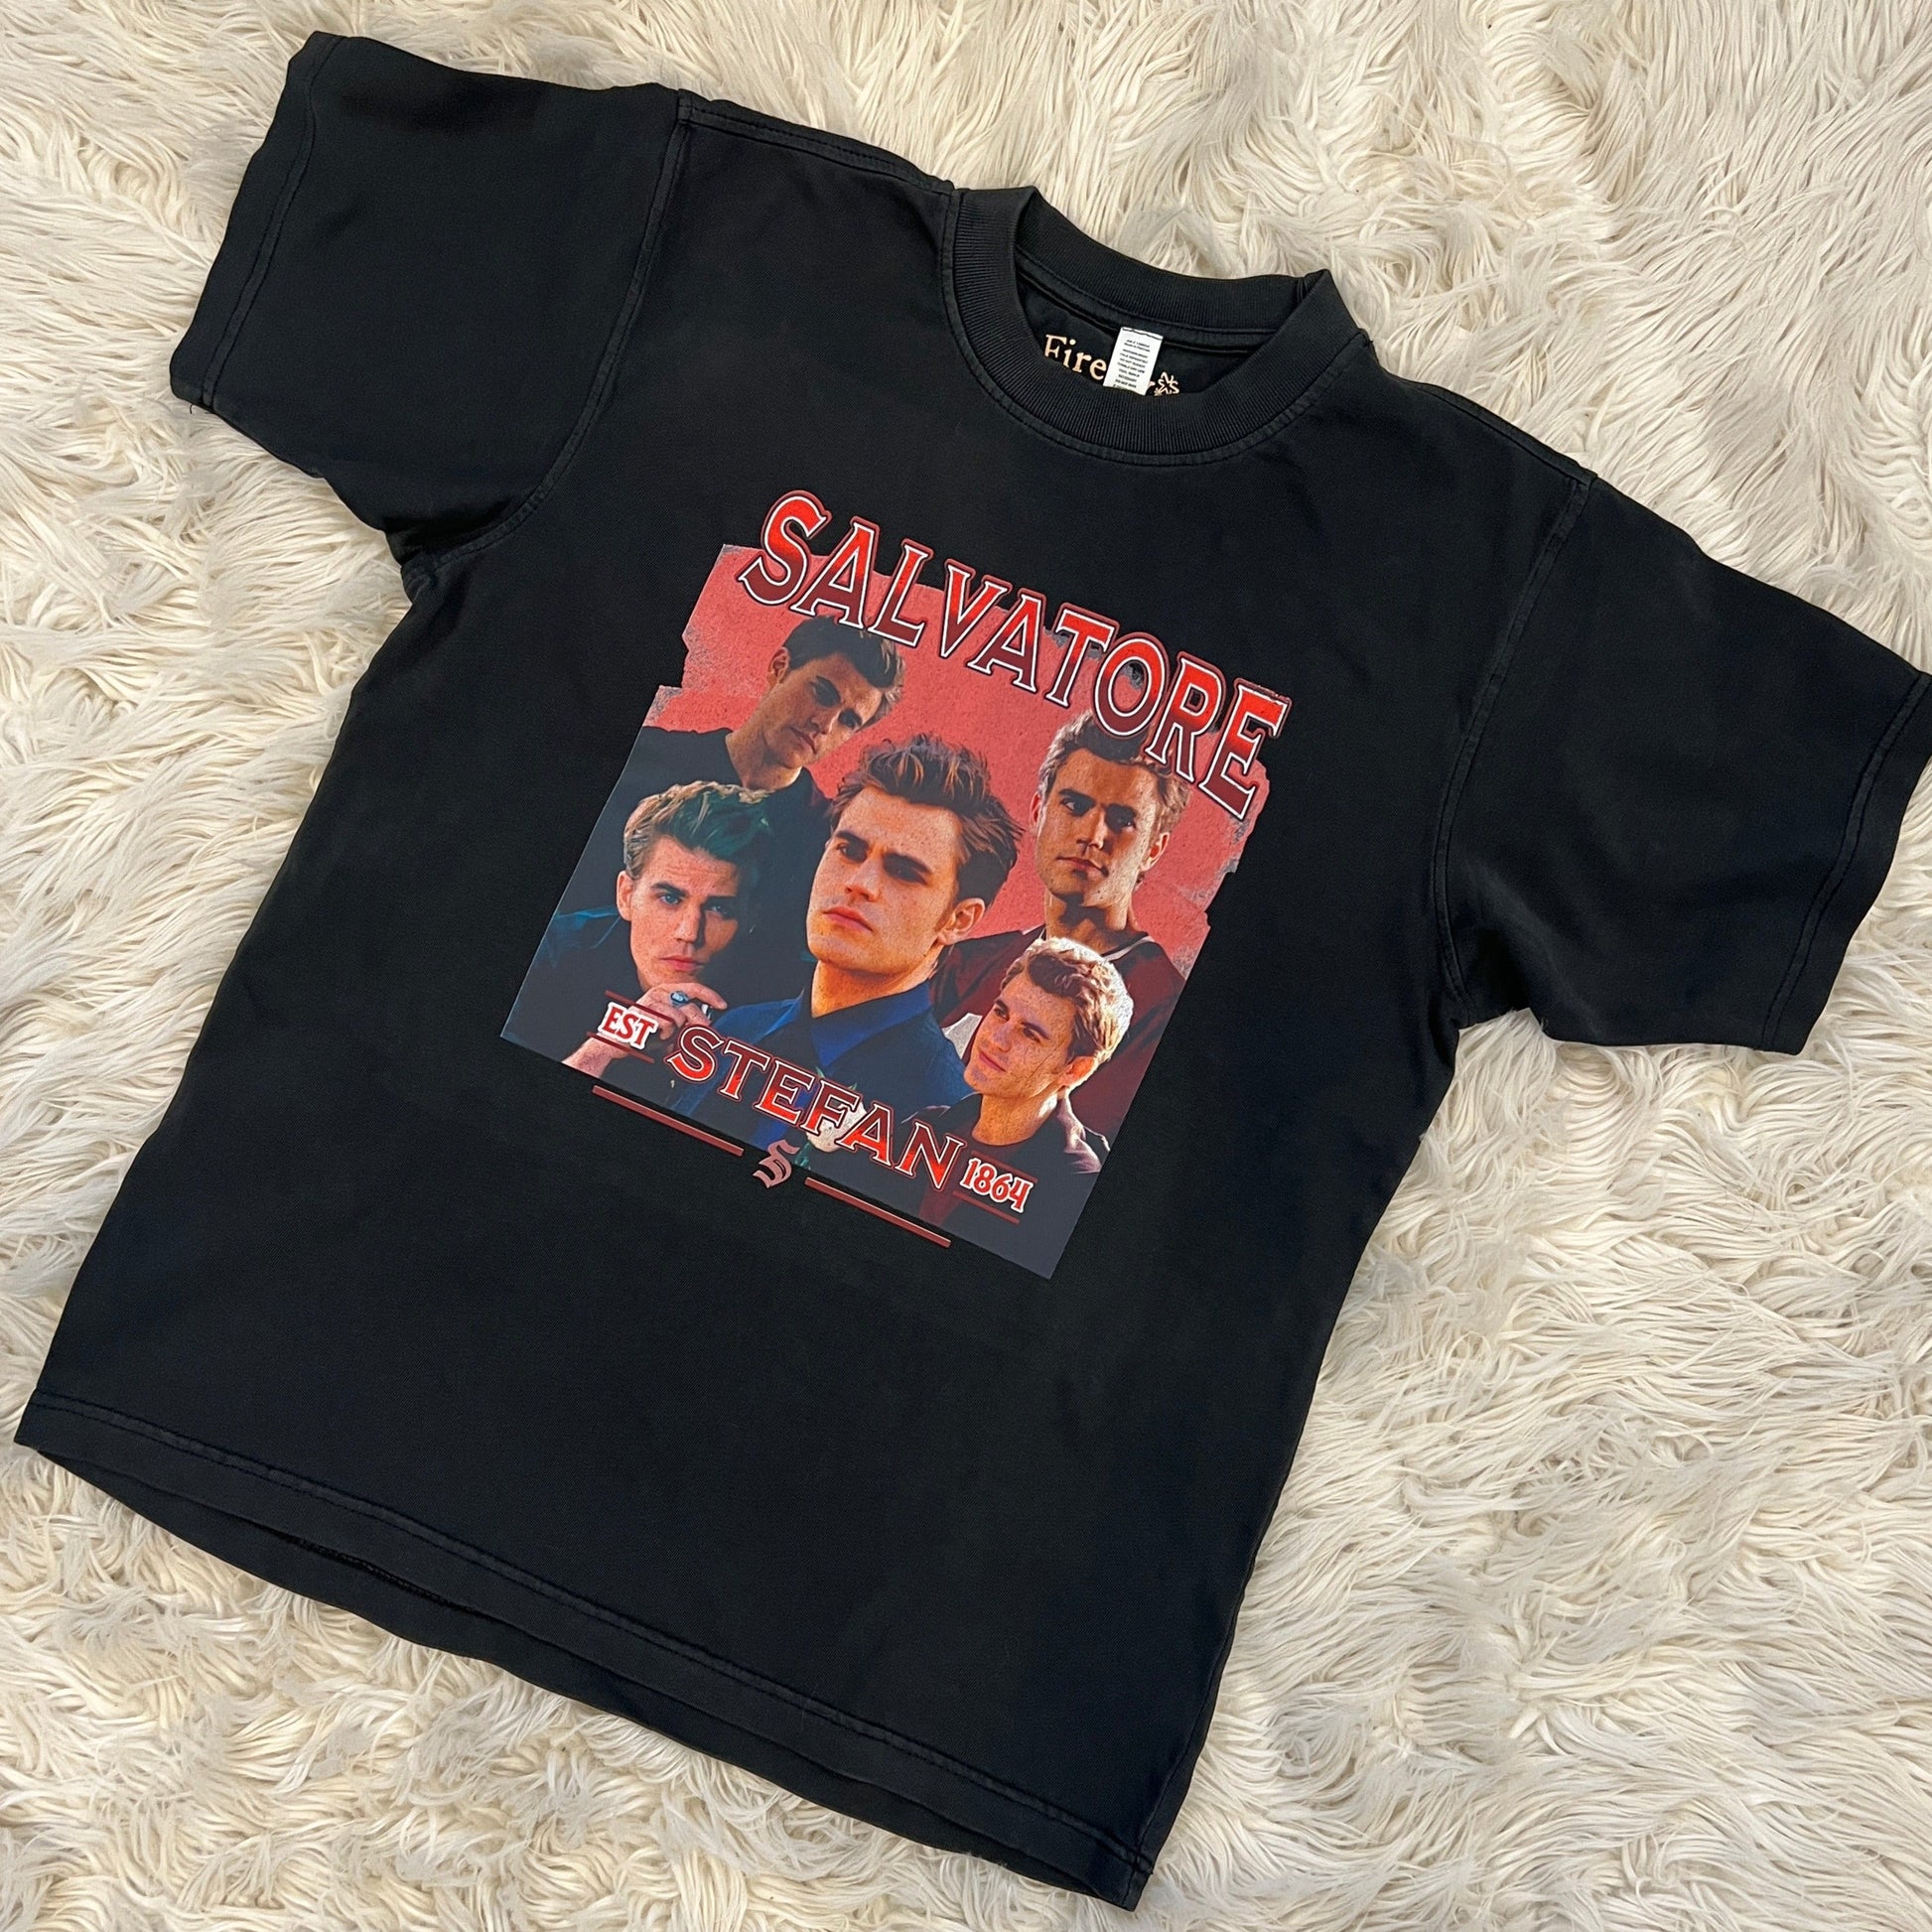 Stefan Salvatore Bootleg T-Shirt Xs / Black Full T-Shirt